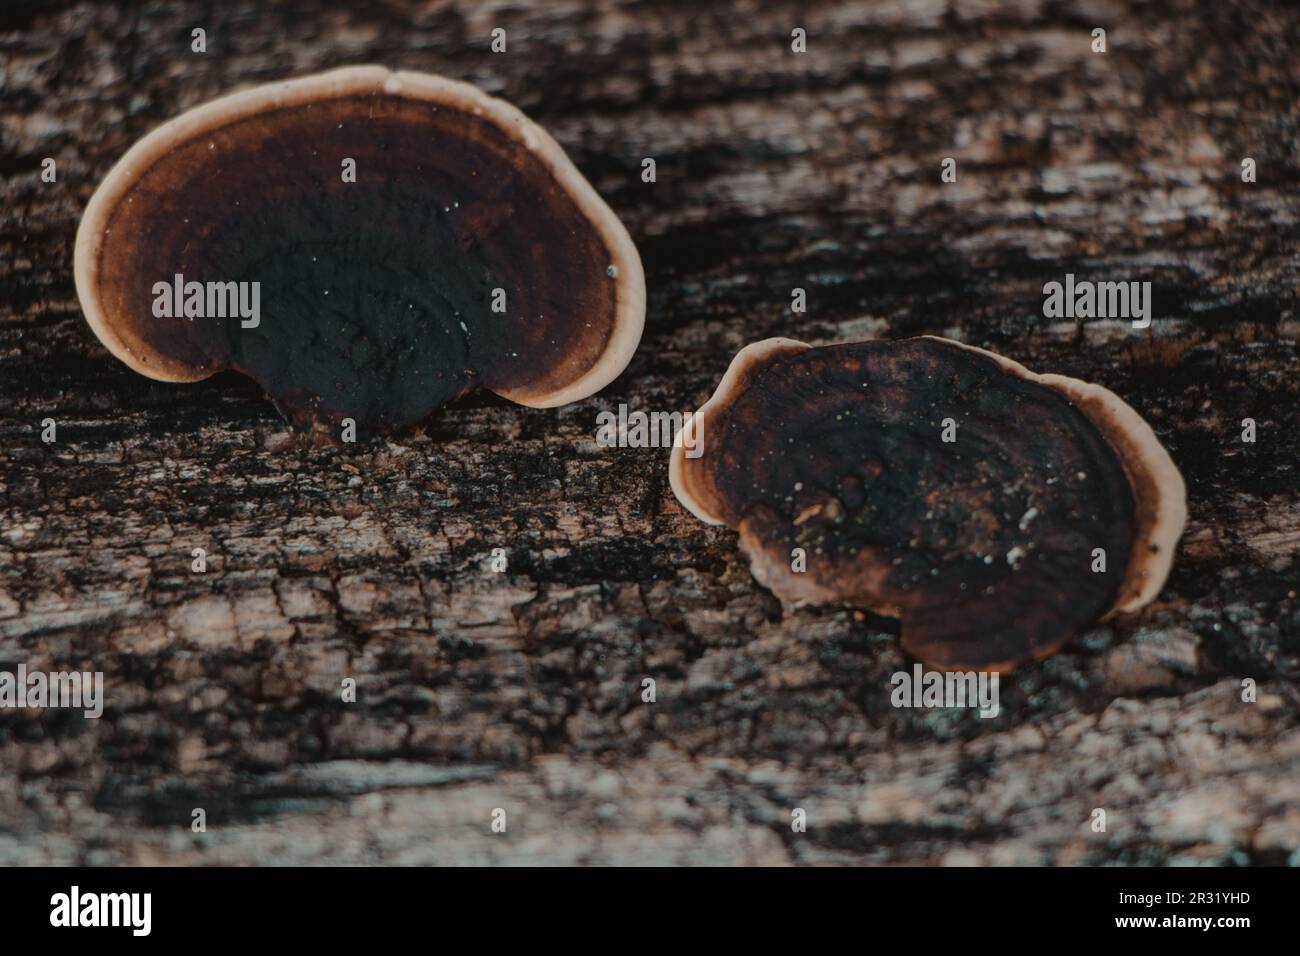 black mushrooms growing in wood Stock Photo